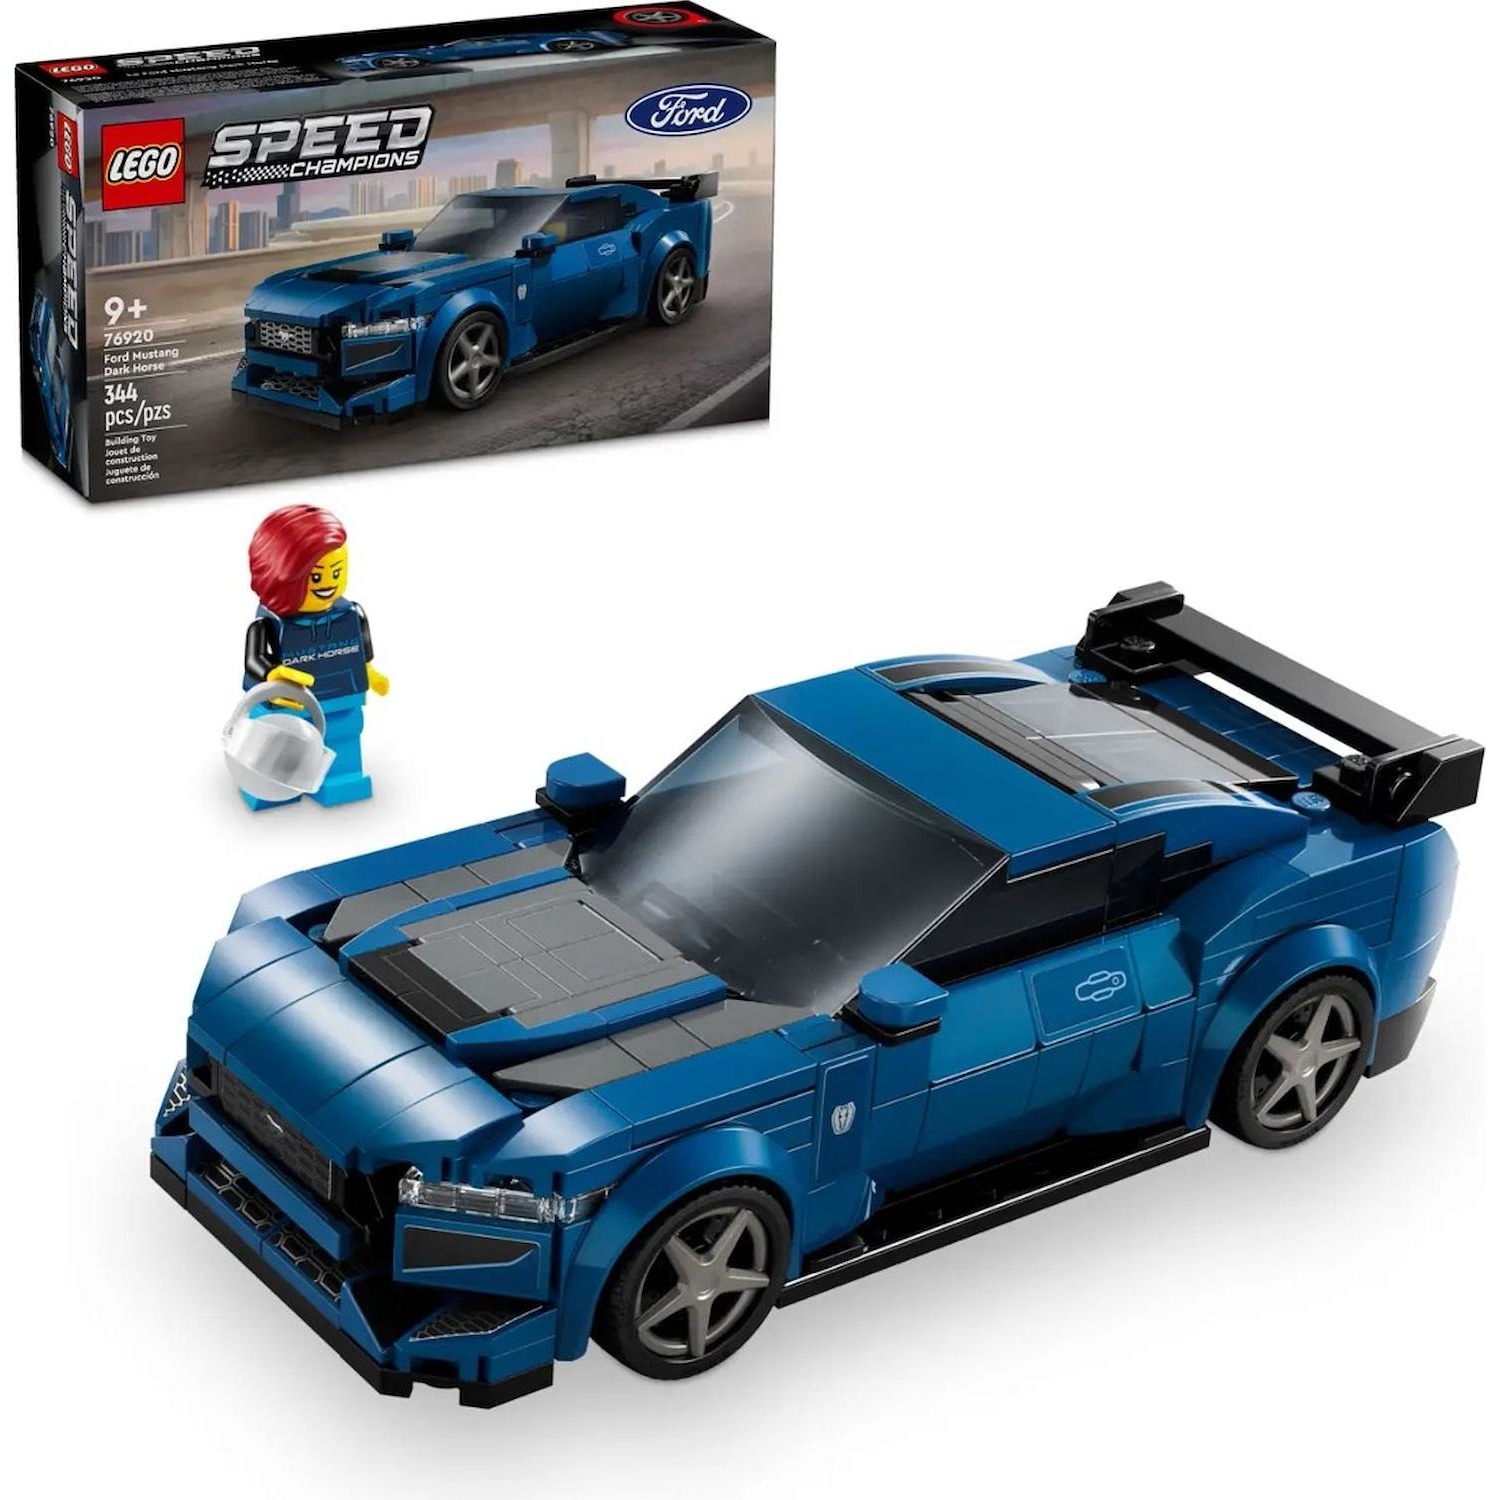 Immagine per Lego Speed Auto sportiva Ford Mustang Dark Horse da DIMOStore